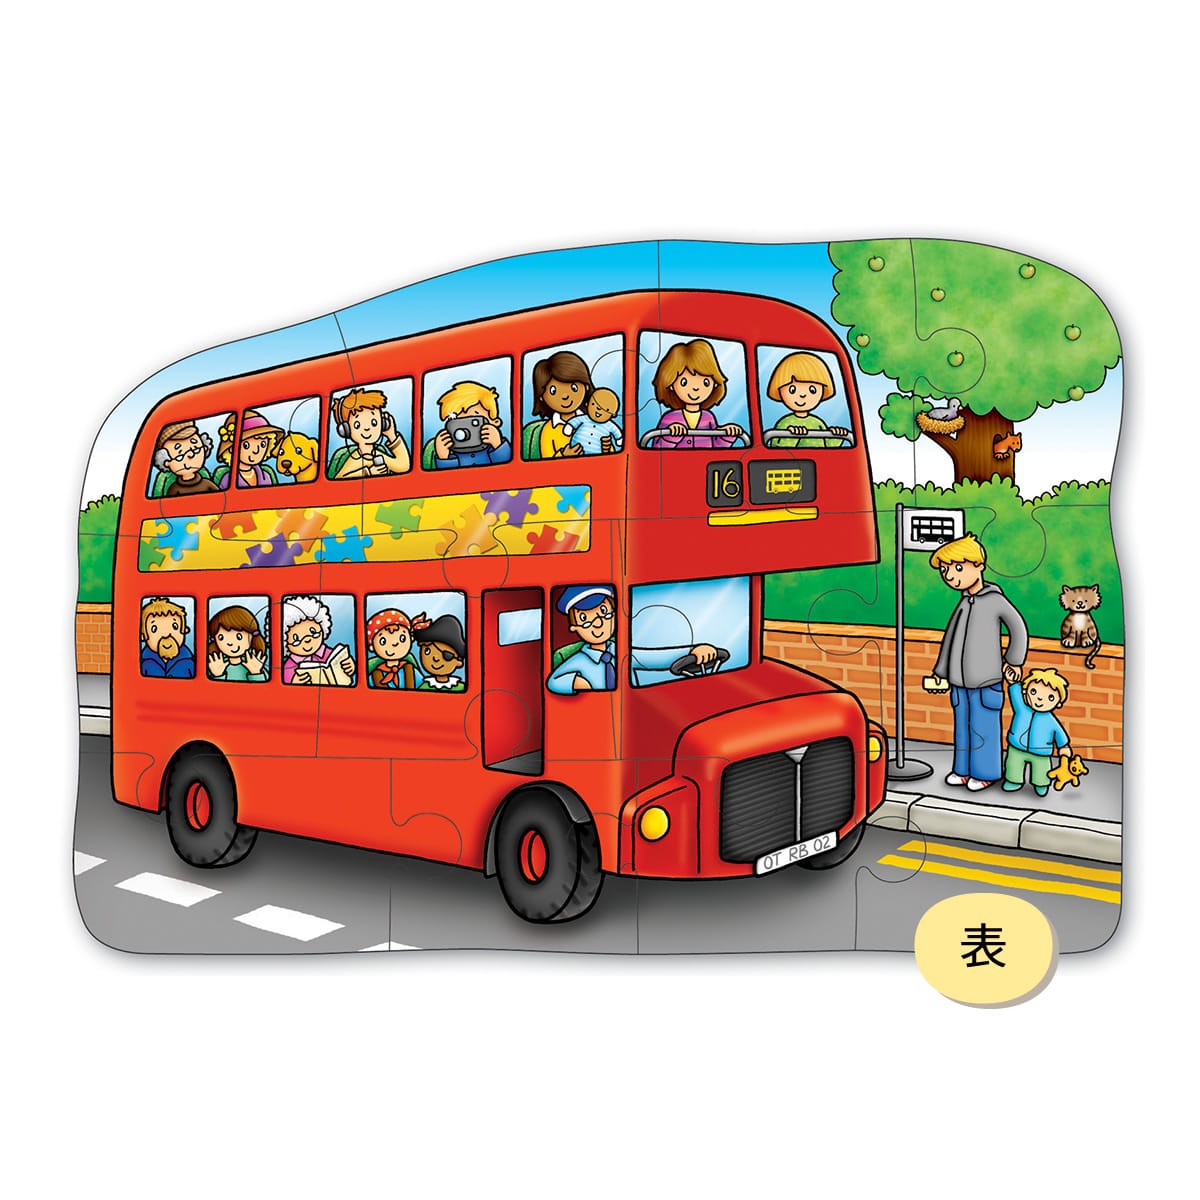 Детский автобус для детей. Автобус для детей. Автобус для детского сада. Изображение автобуса для детей. Автобус картинка для детей.